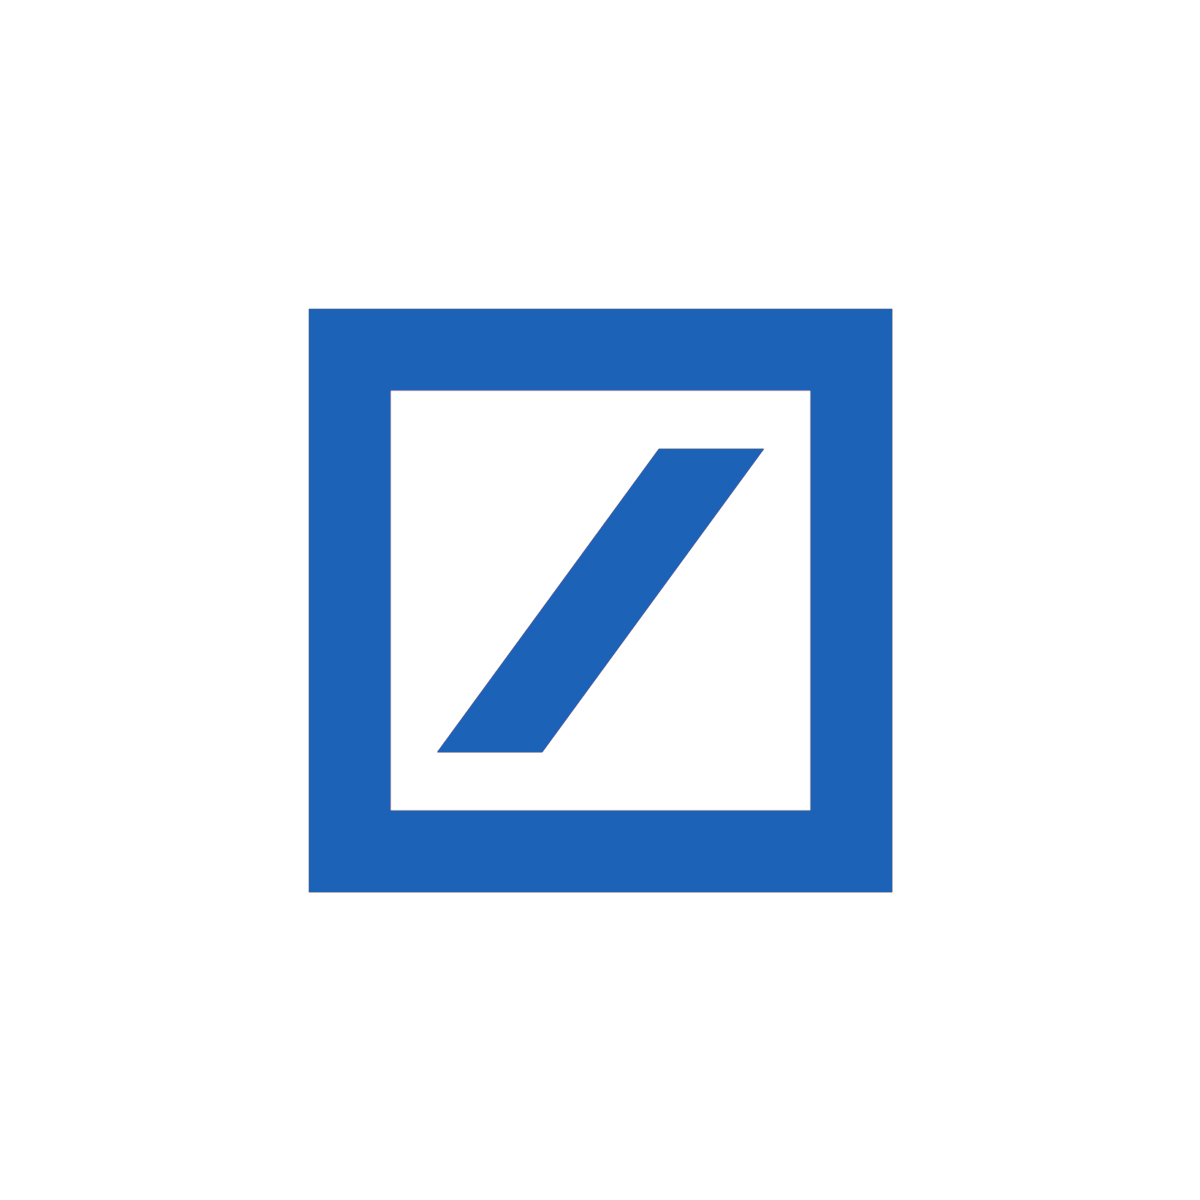 Deutsche Bank logo by Anton Stankowski, 1972